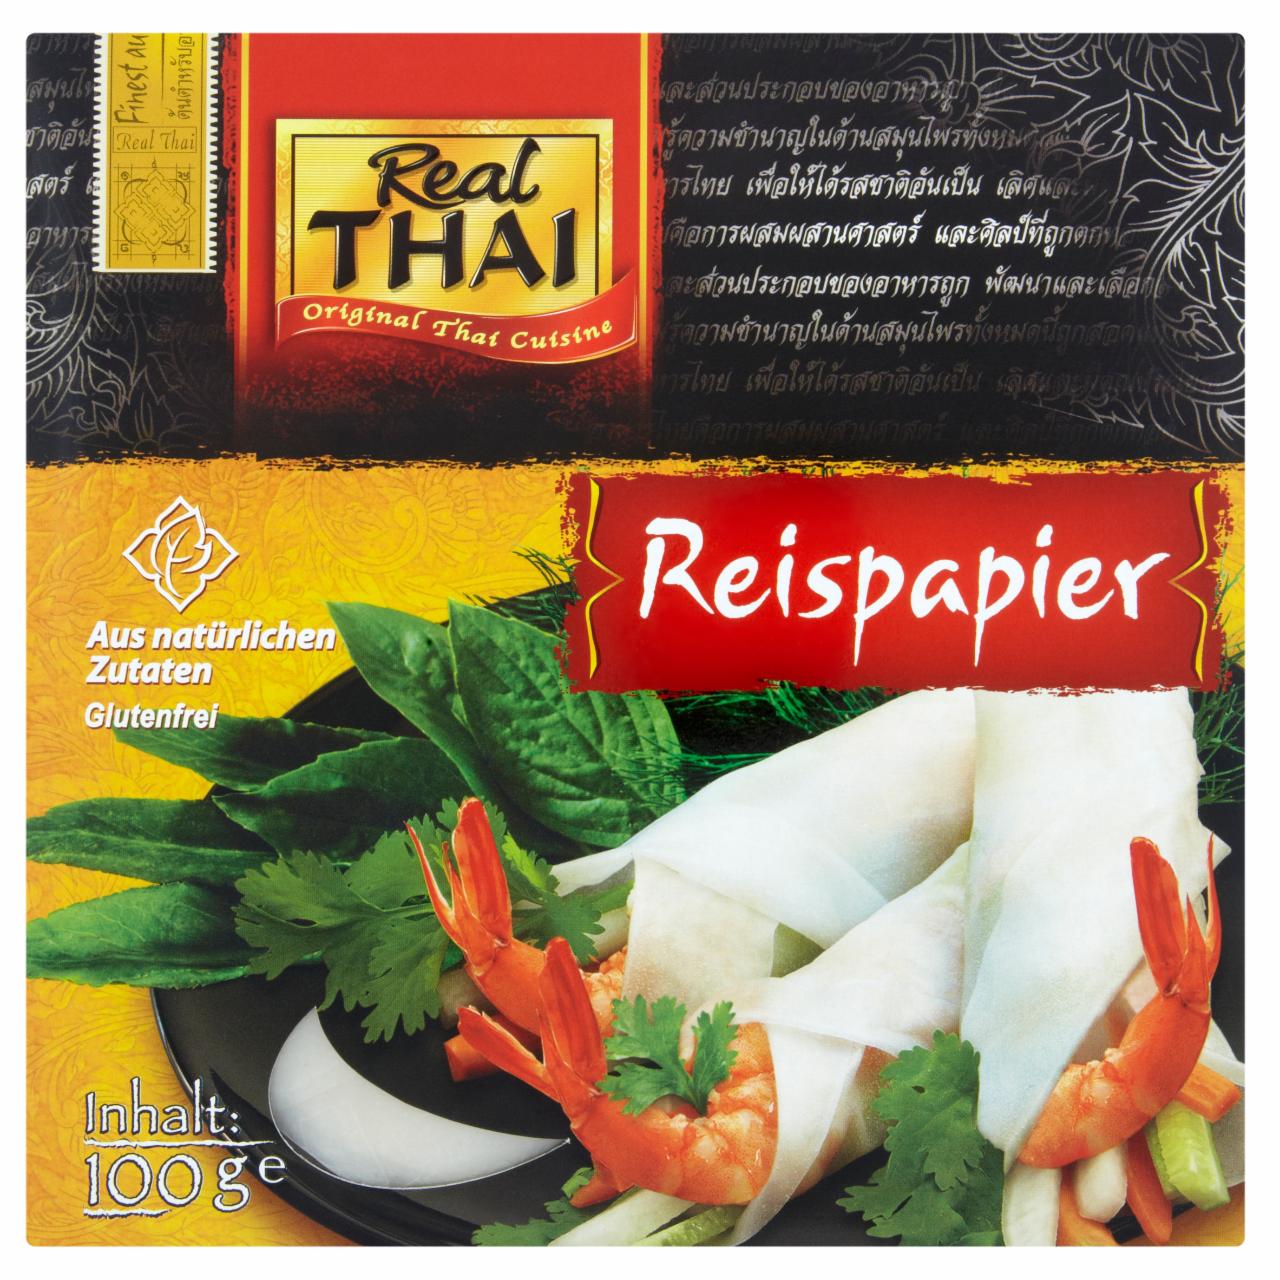 Képek - Real Thai rizspapír 100 g